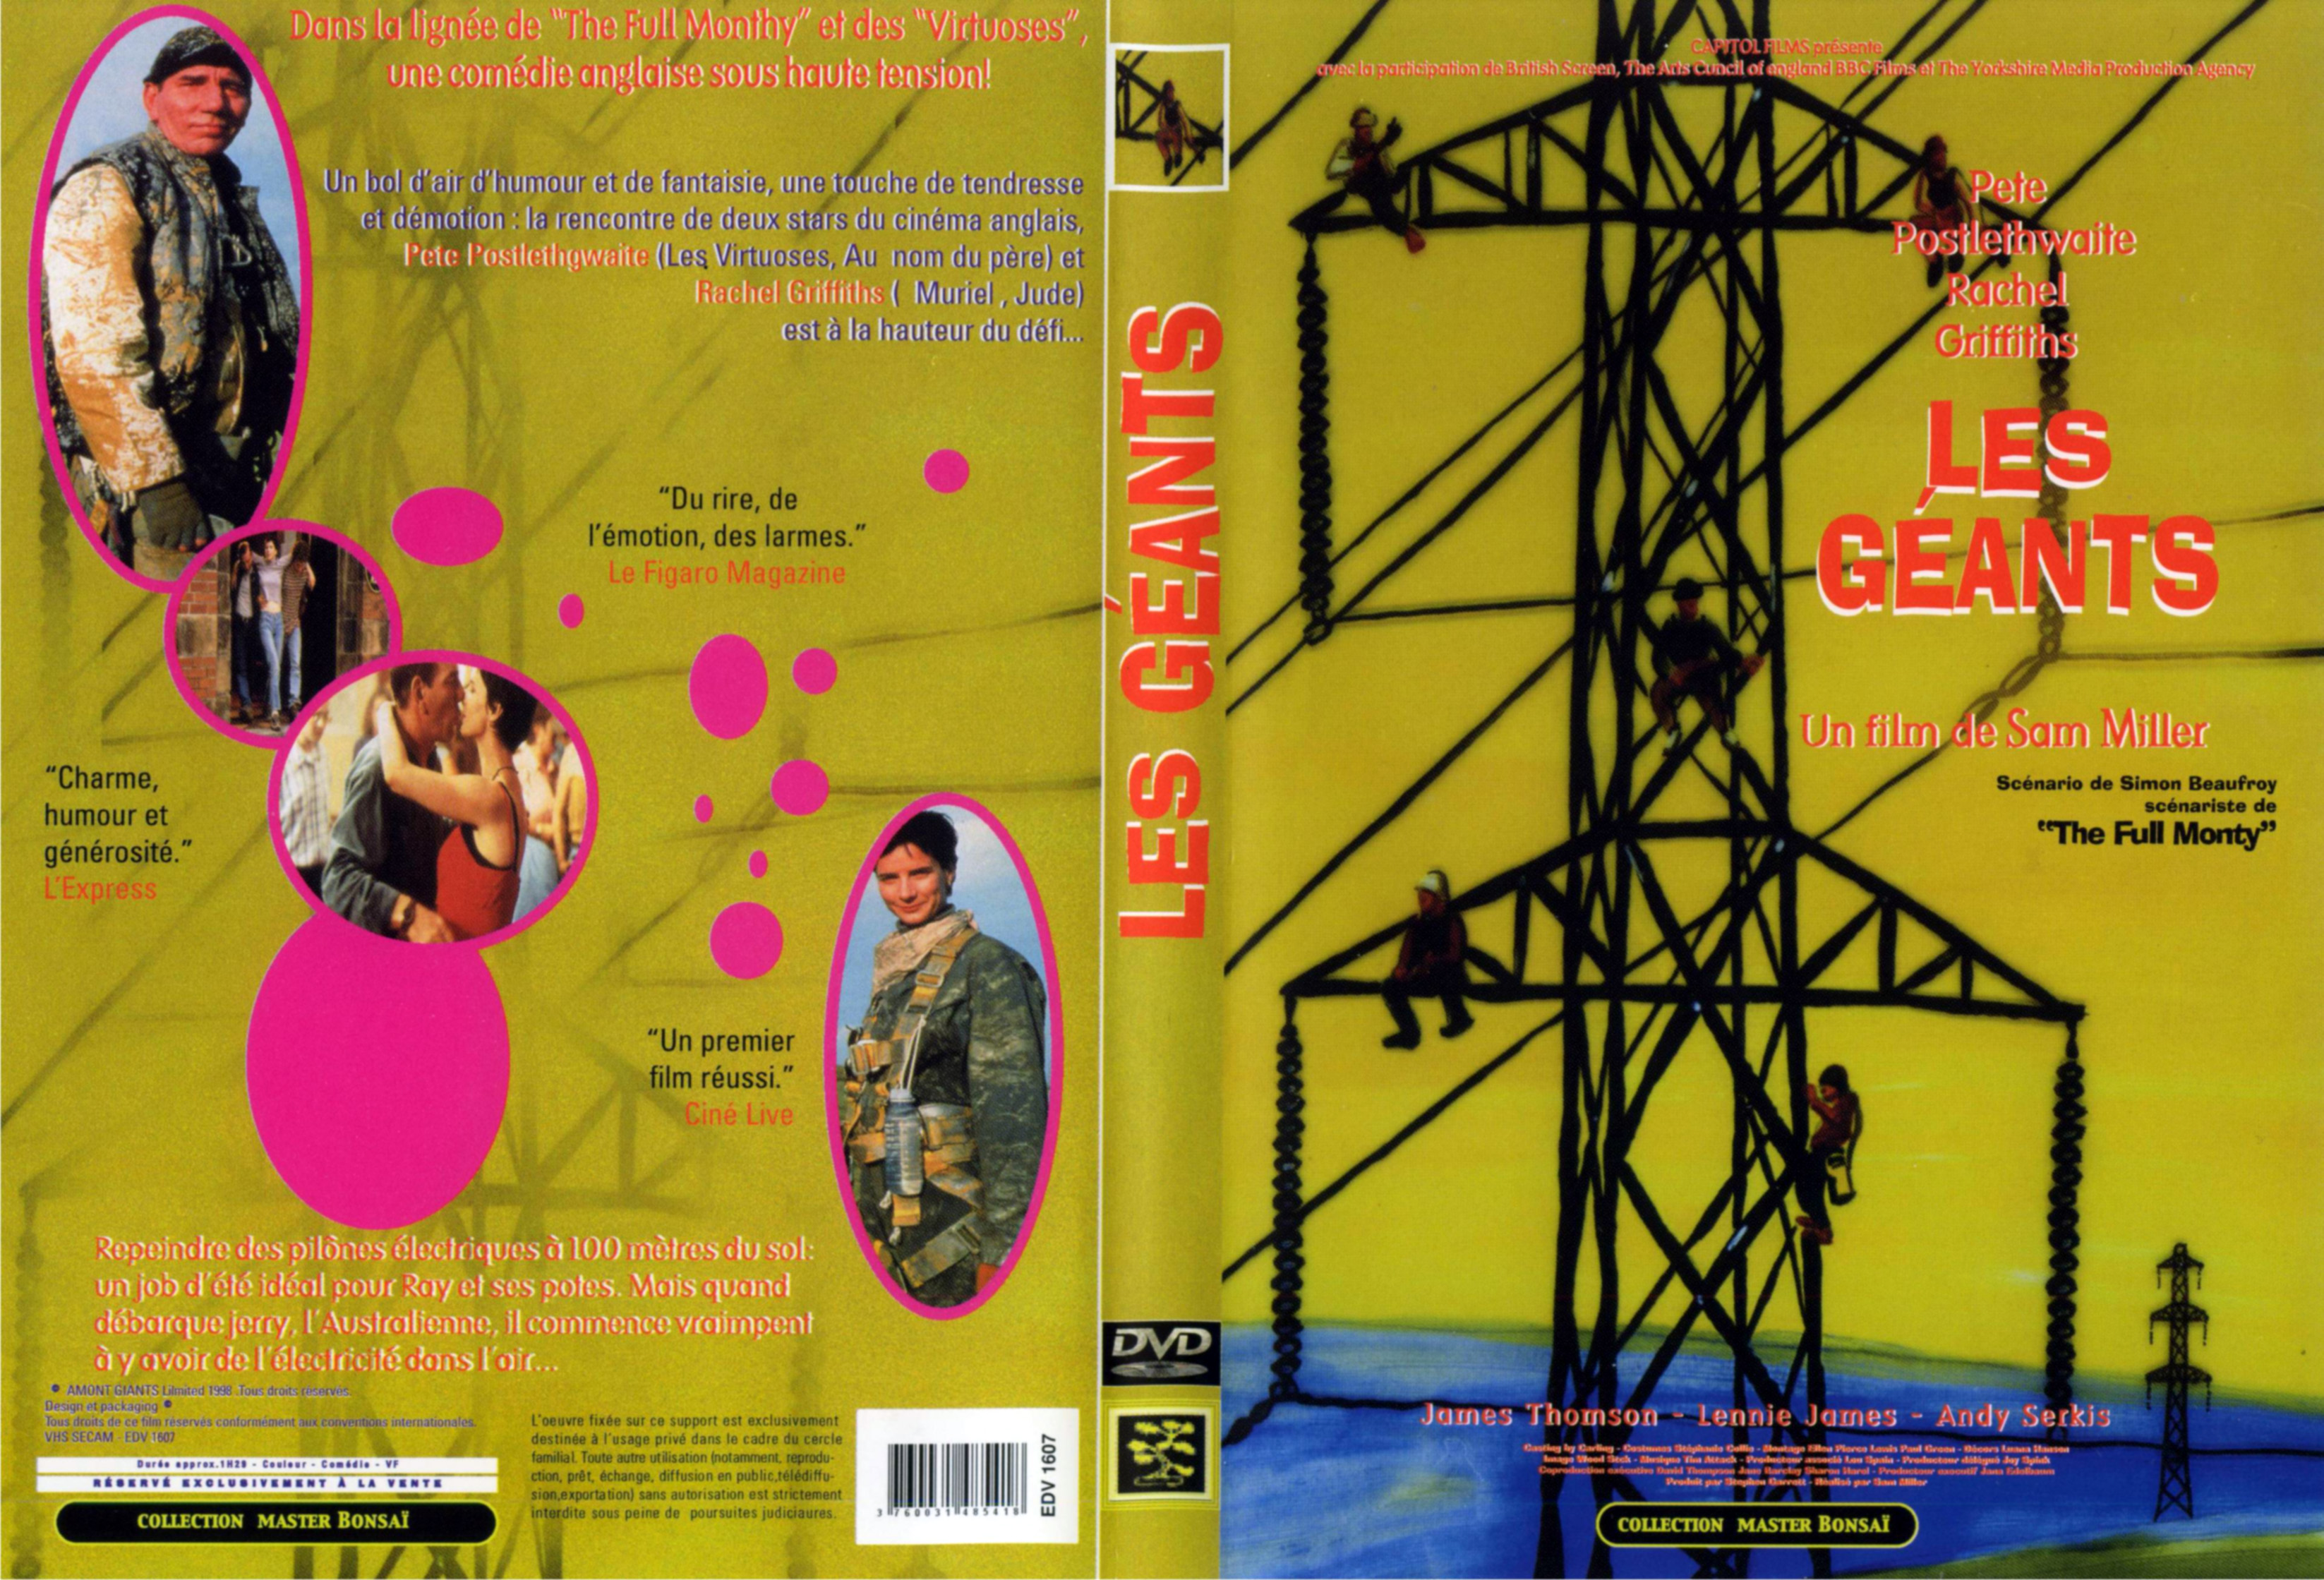 Jaquette DVD Les geants (1997)